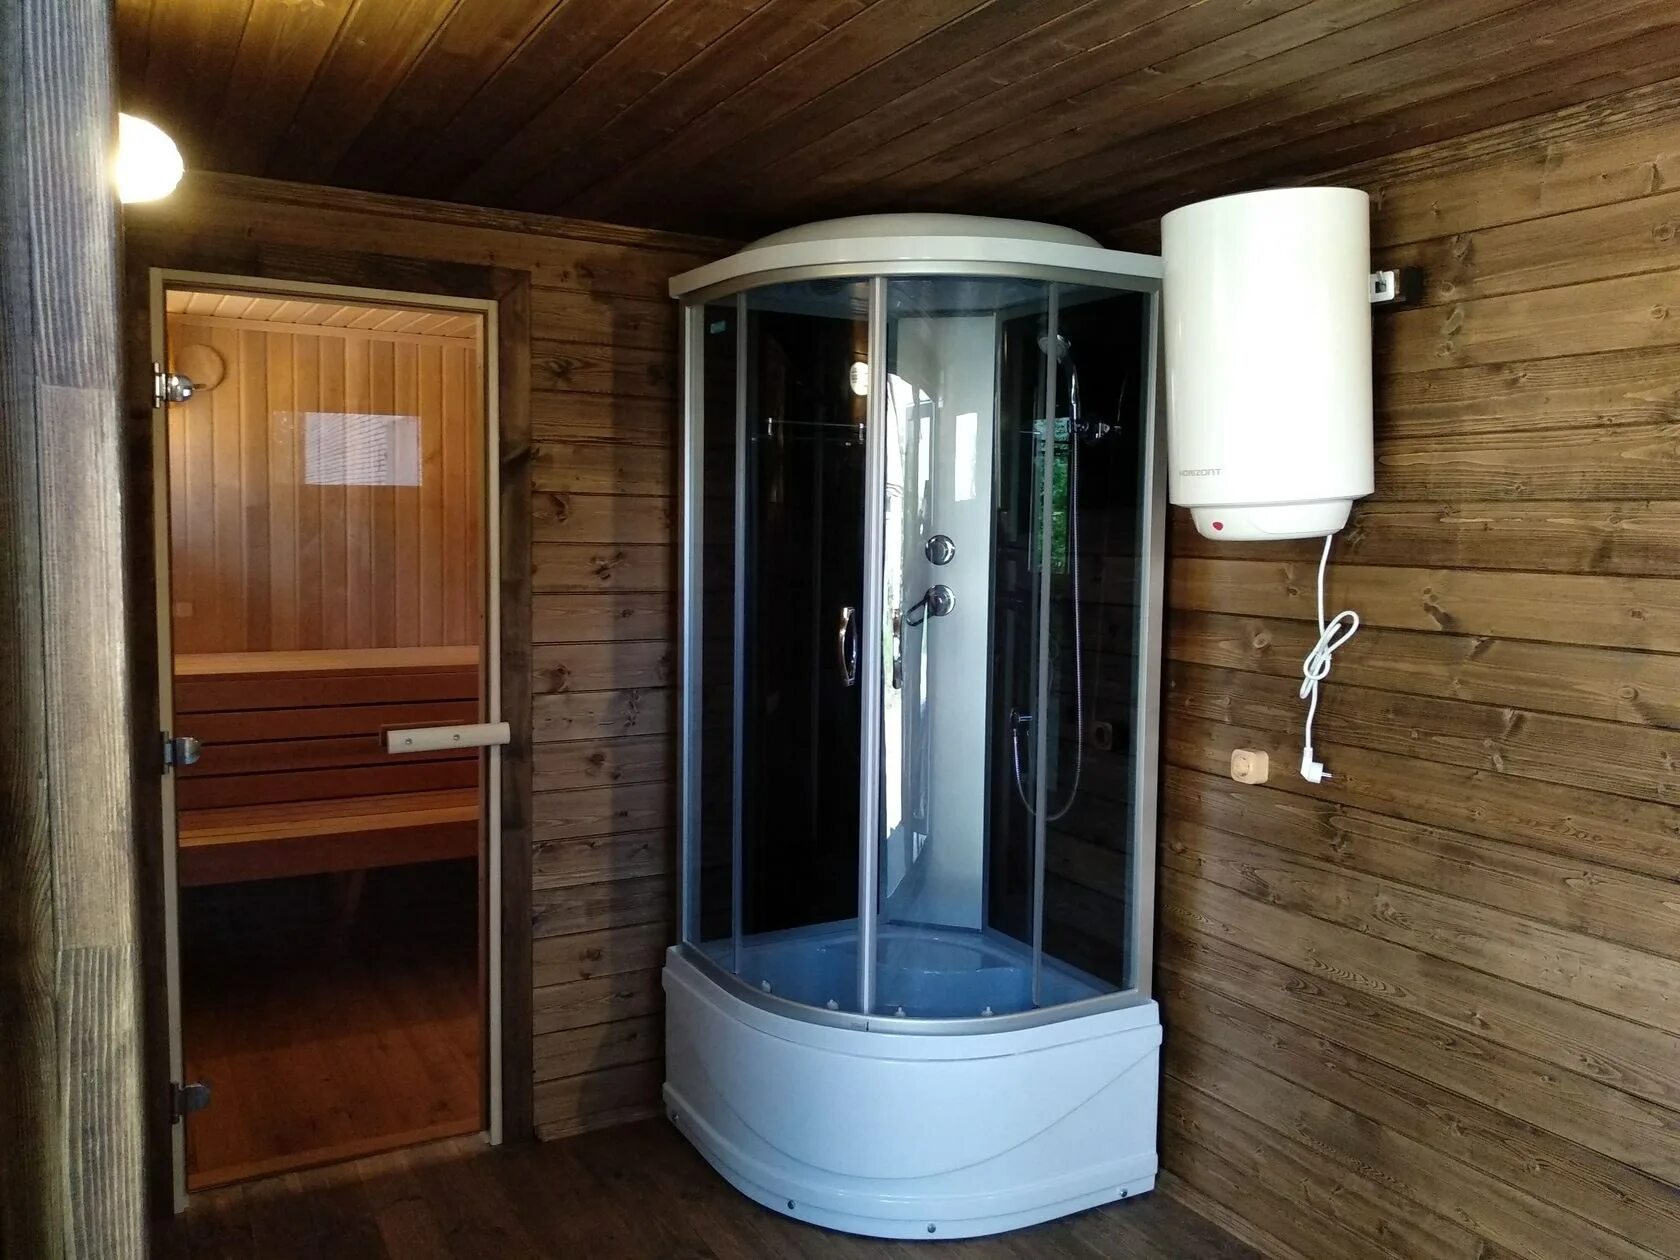 Видео баня душевая. Баня с душевой кабиной. Душевая кабина в бане. Душевая кабина в бане на даче. Душевая в деревянном доме.